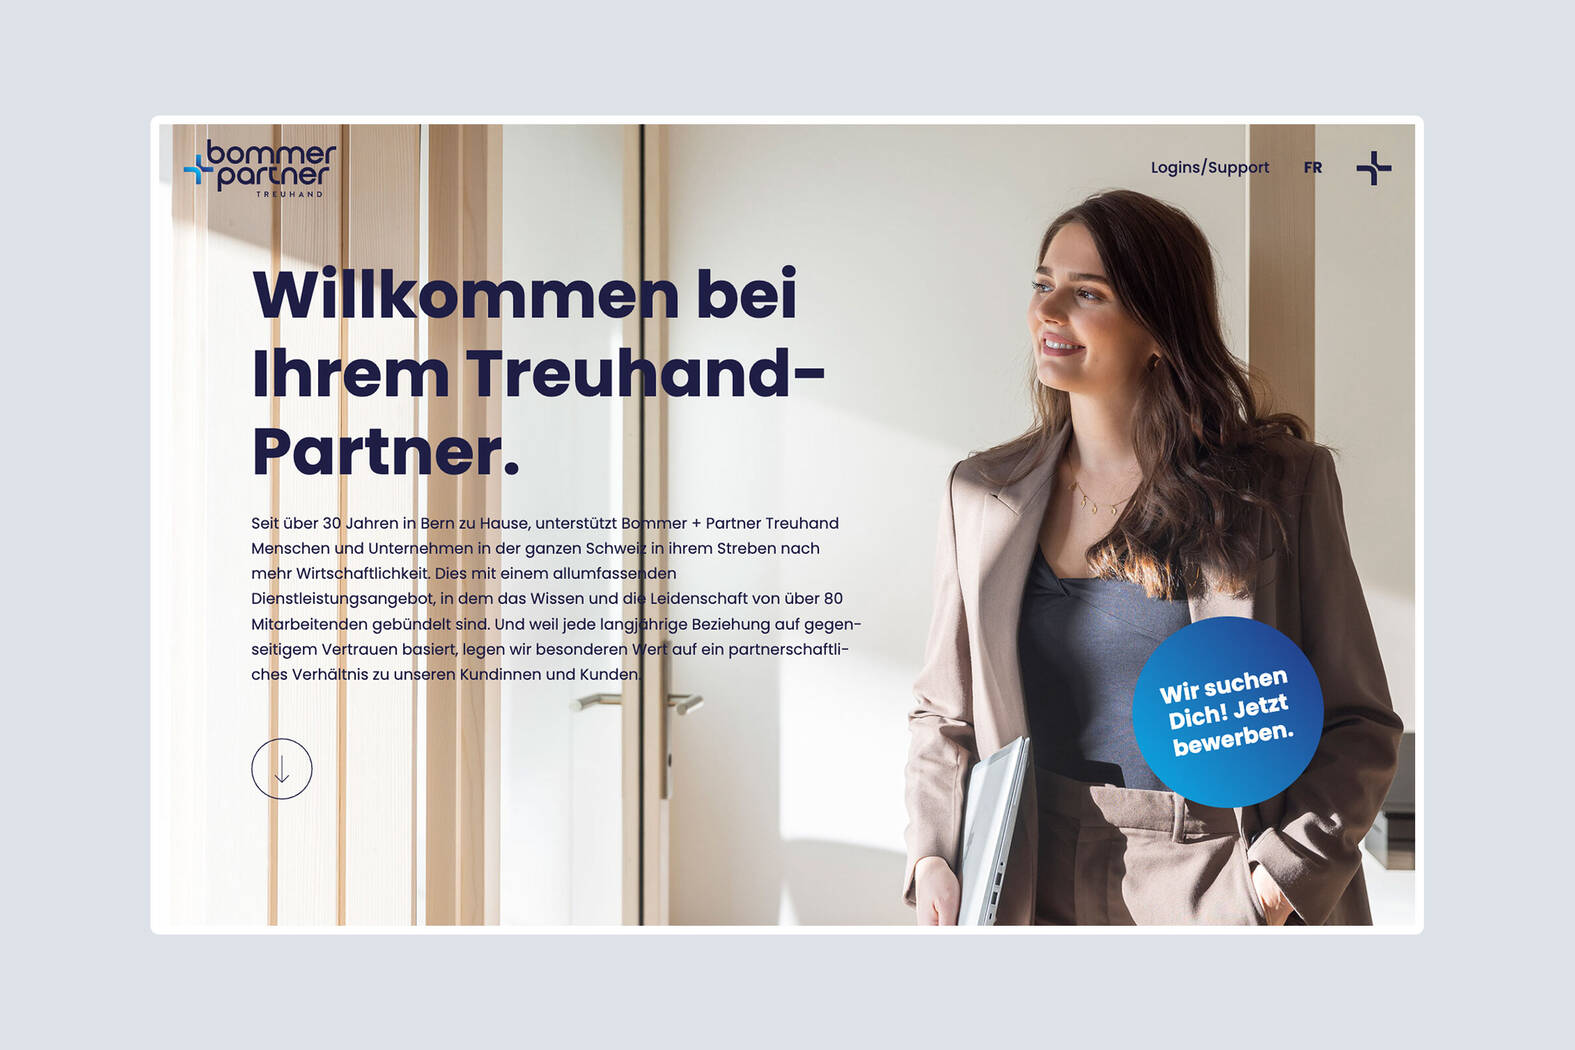 Bommer + Partner Treuhand – Technische Umsetzung